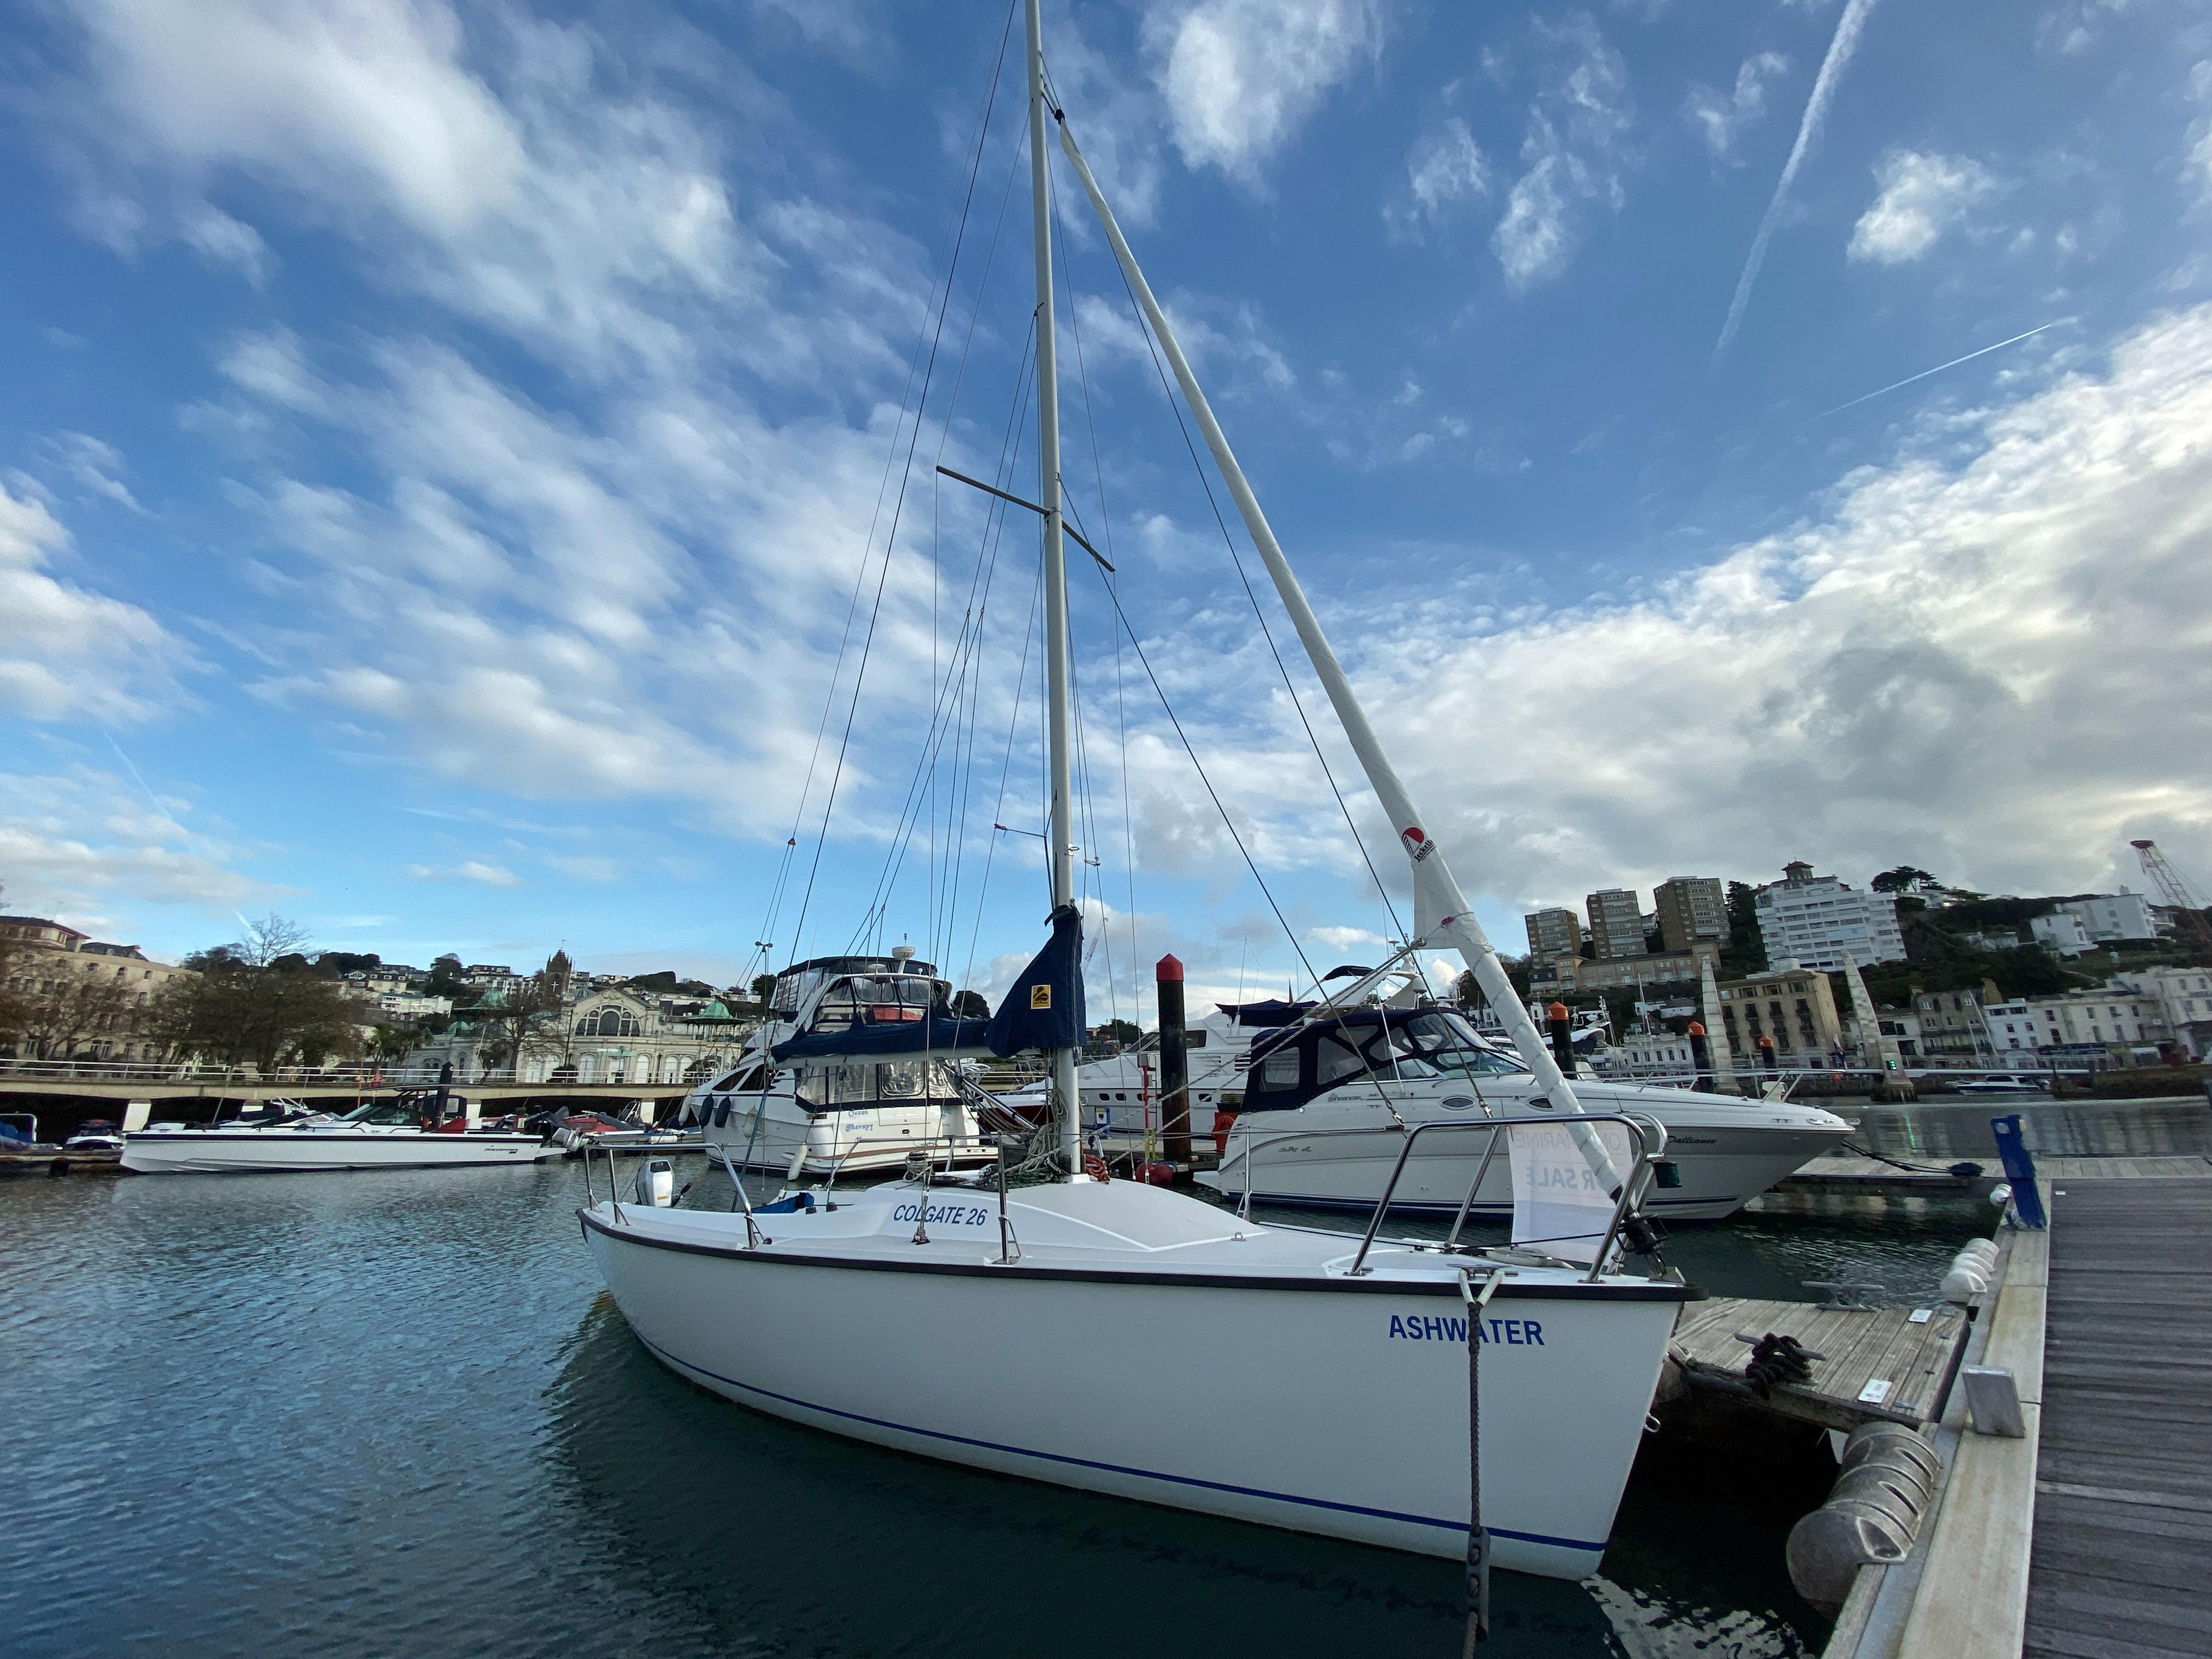 colgate 26 sailboat review